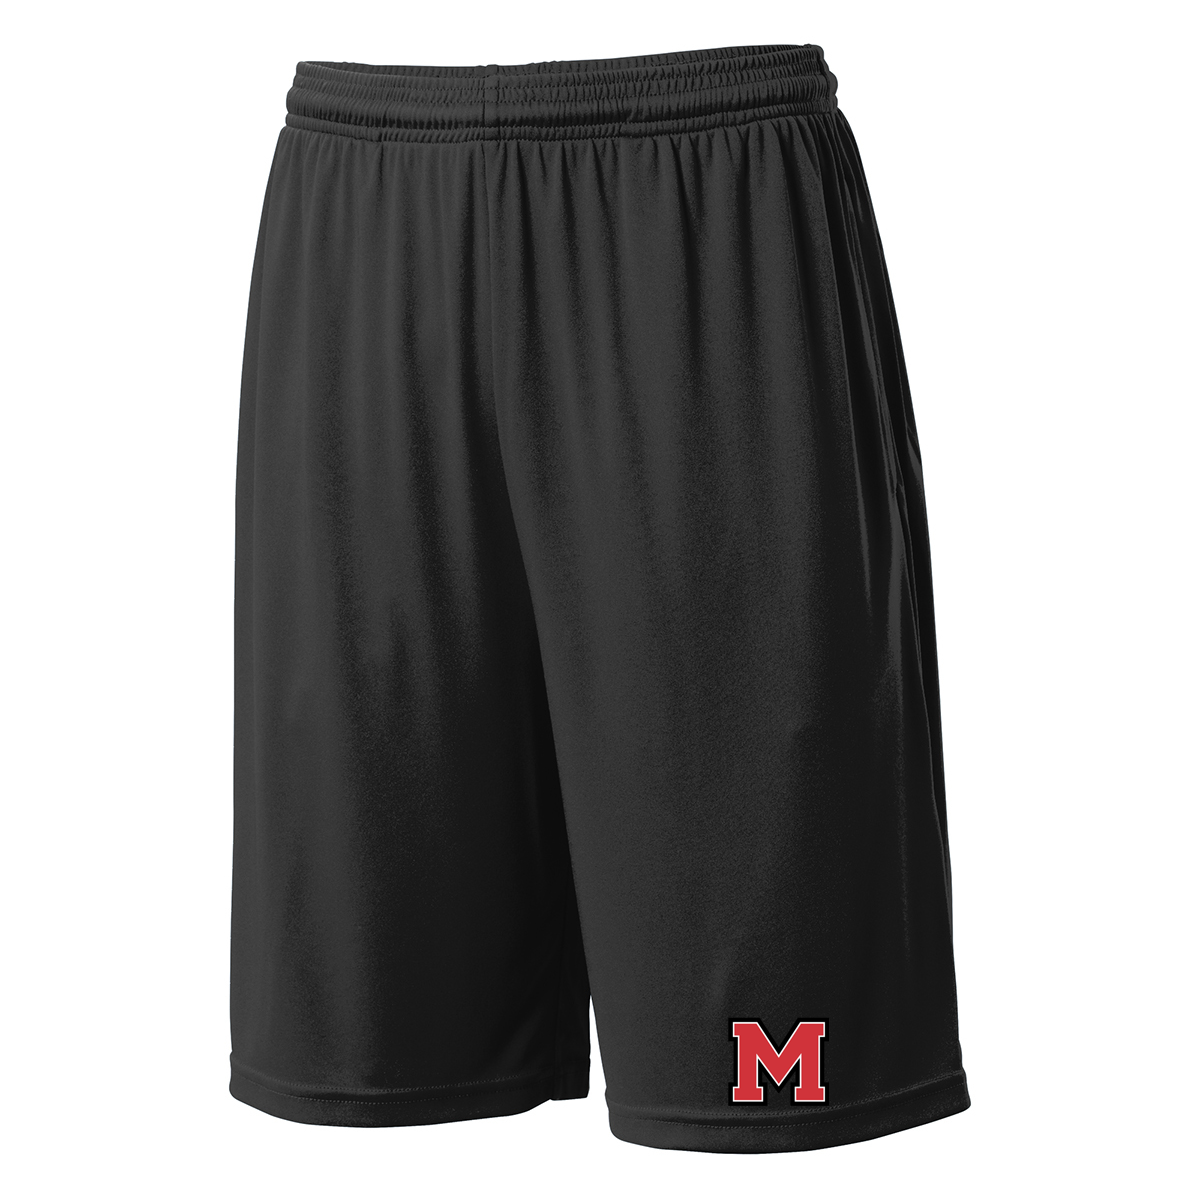 Morgan County Basketball Shorts